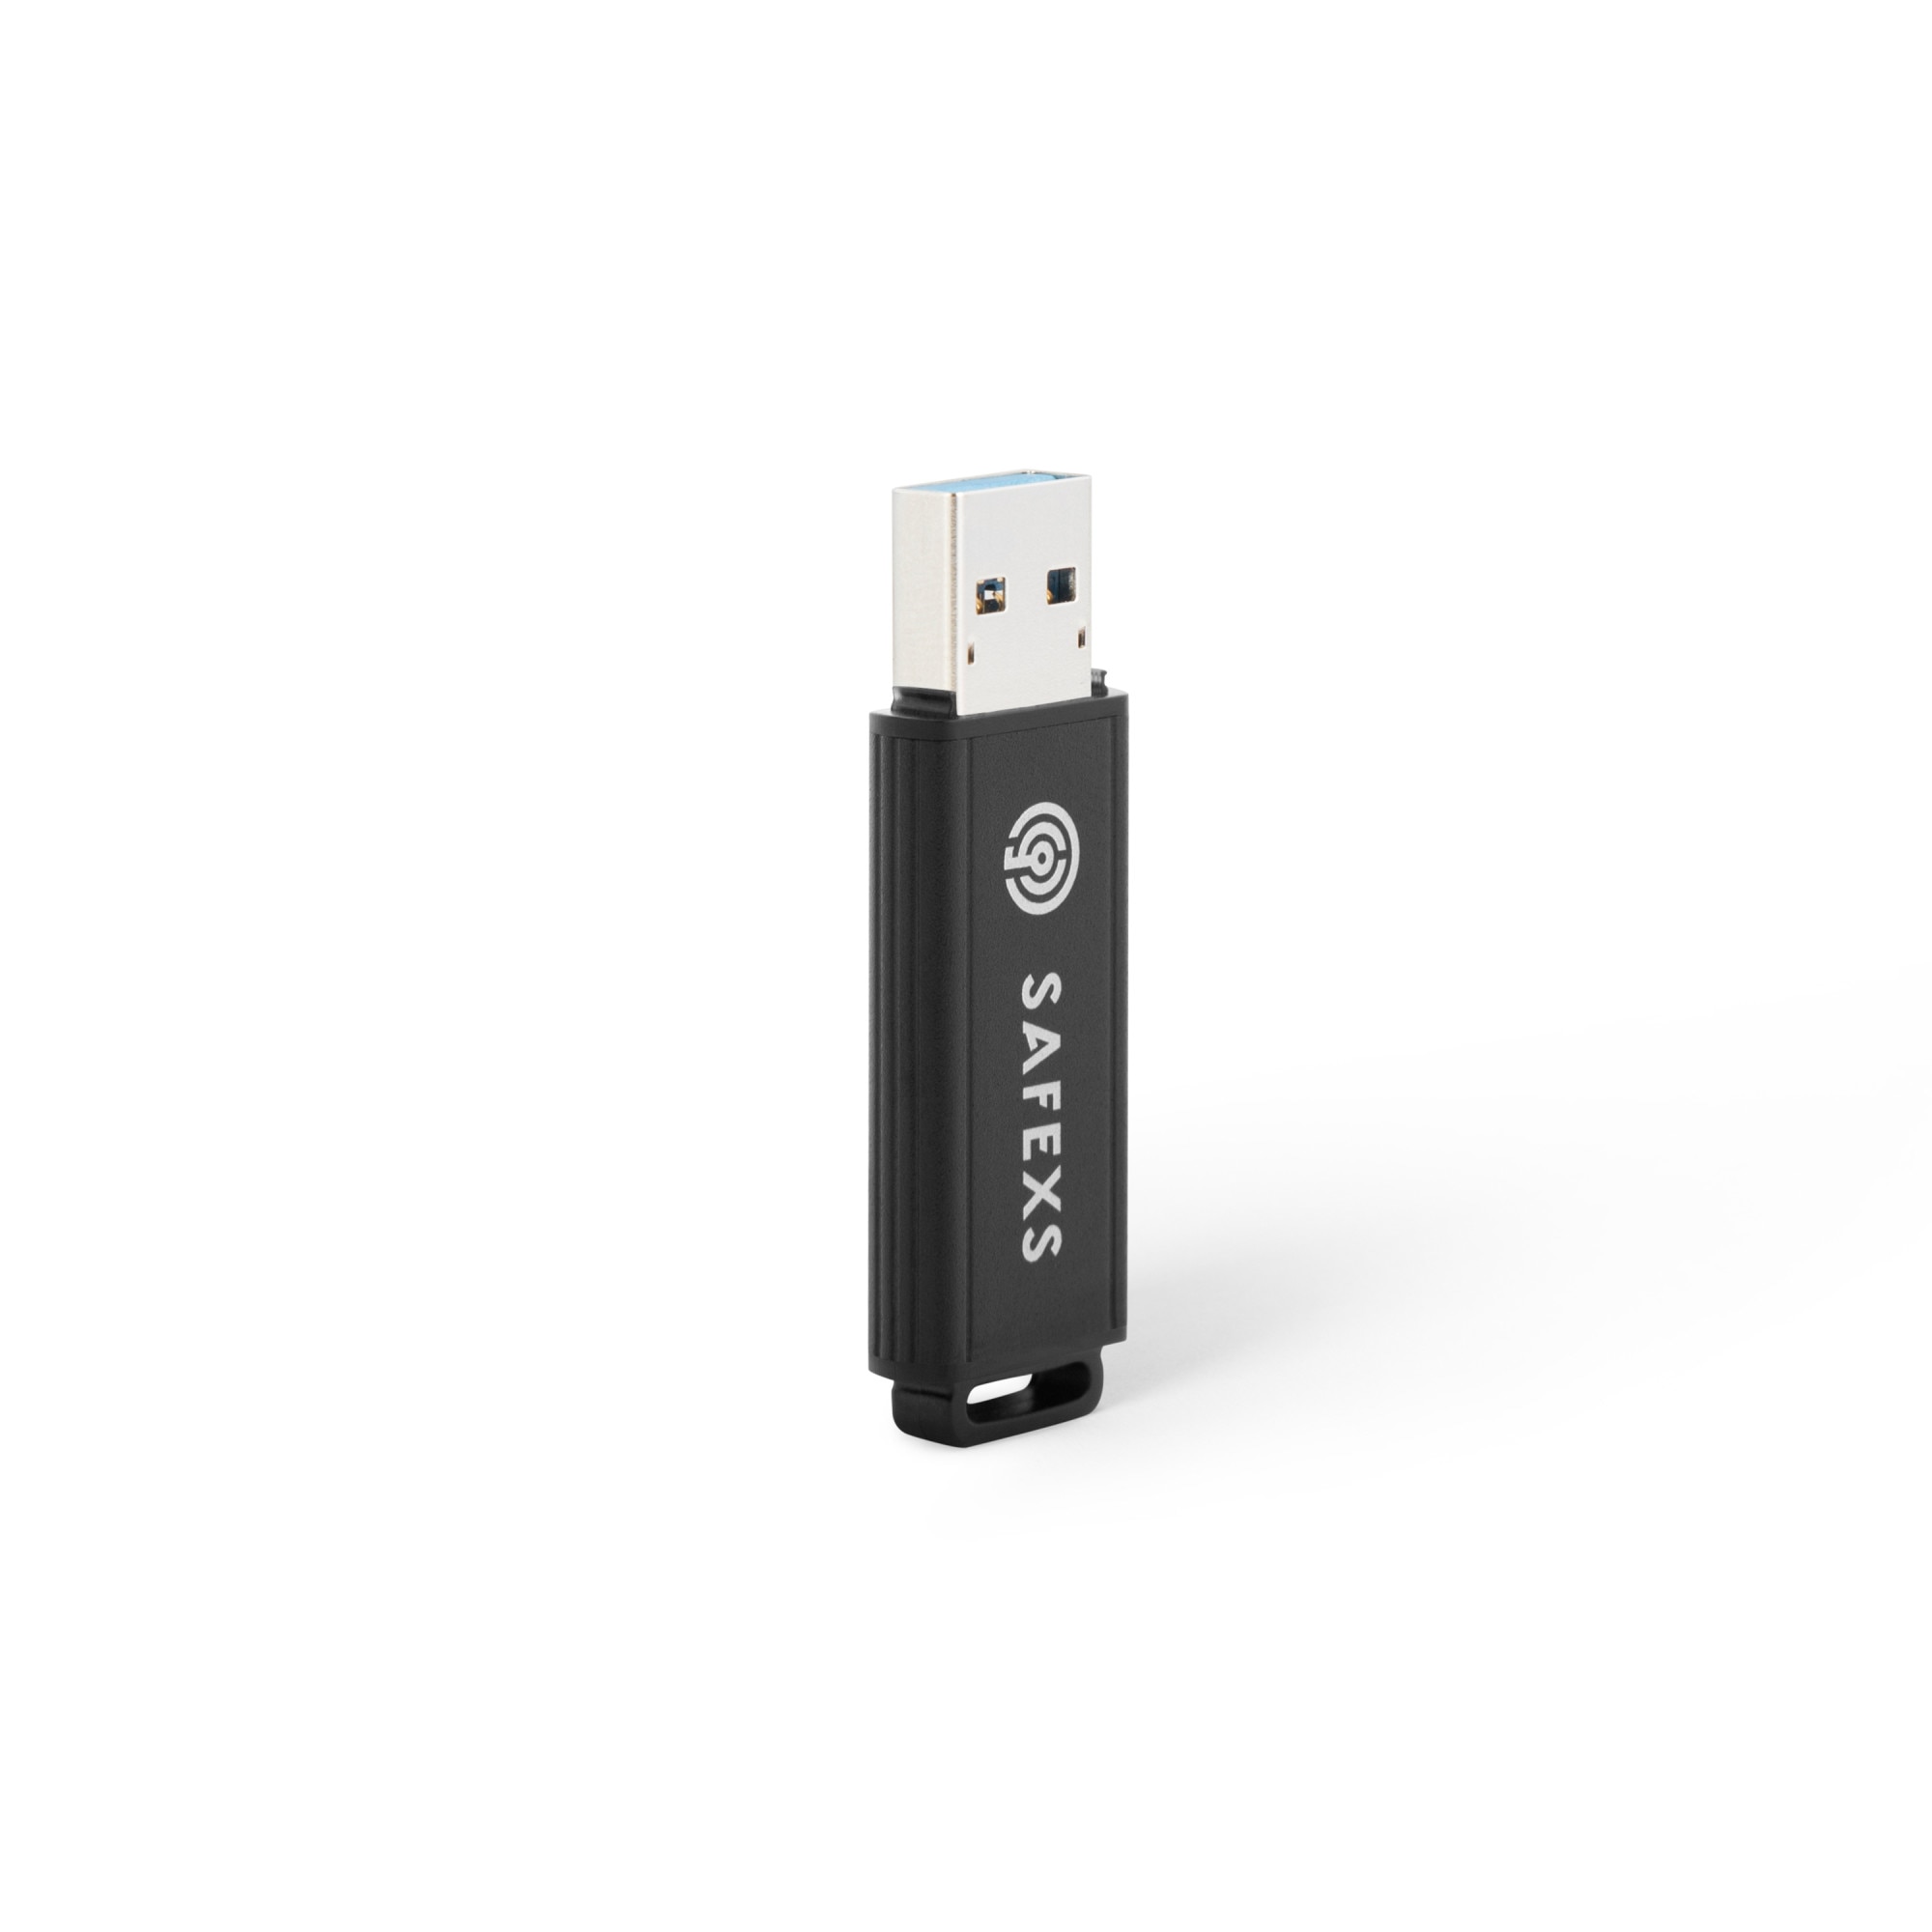 SafeXs Protector 3.0 16Go clé USB3 cryptée durcie